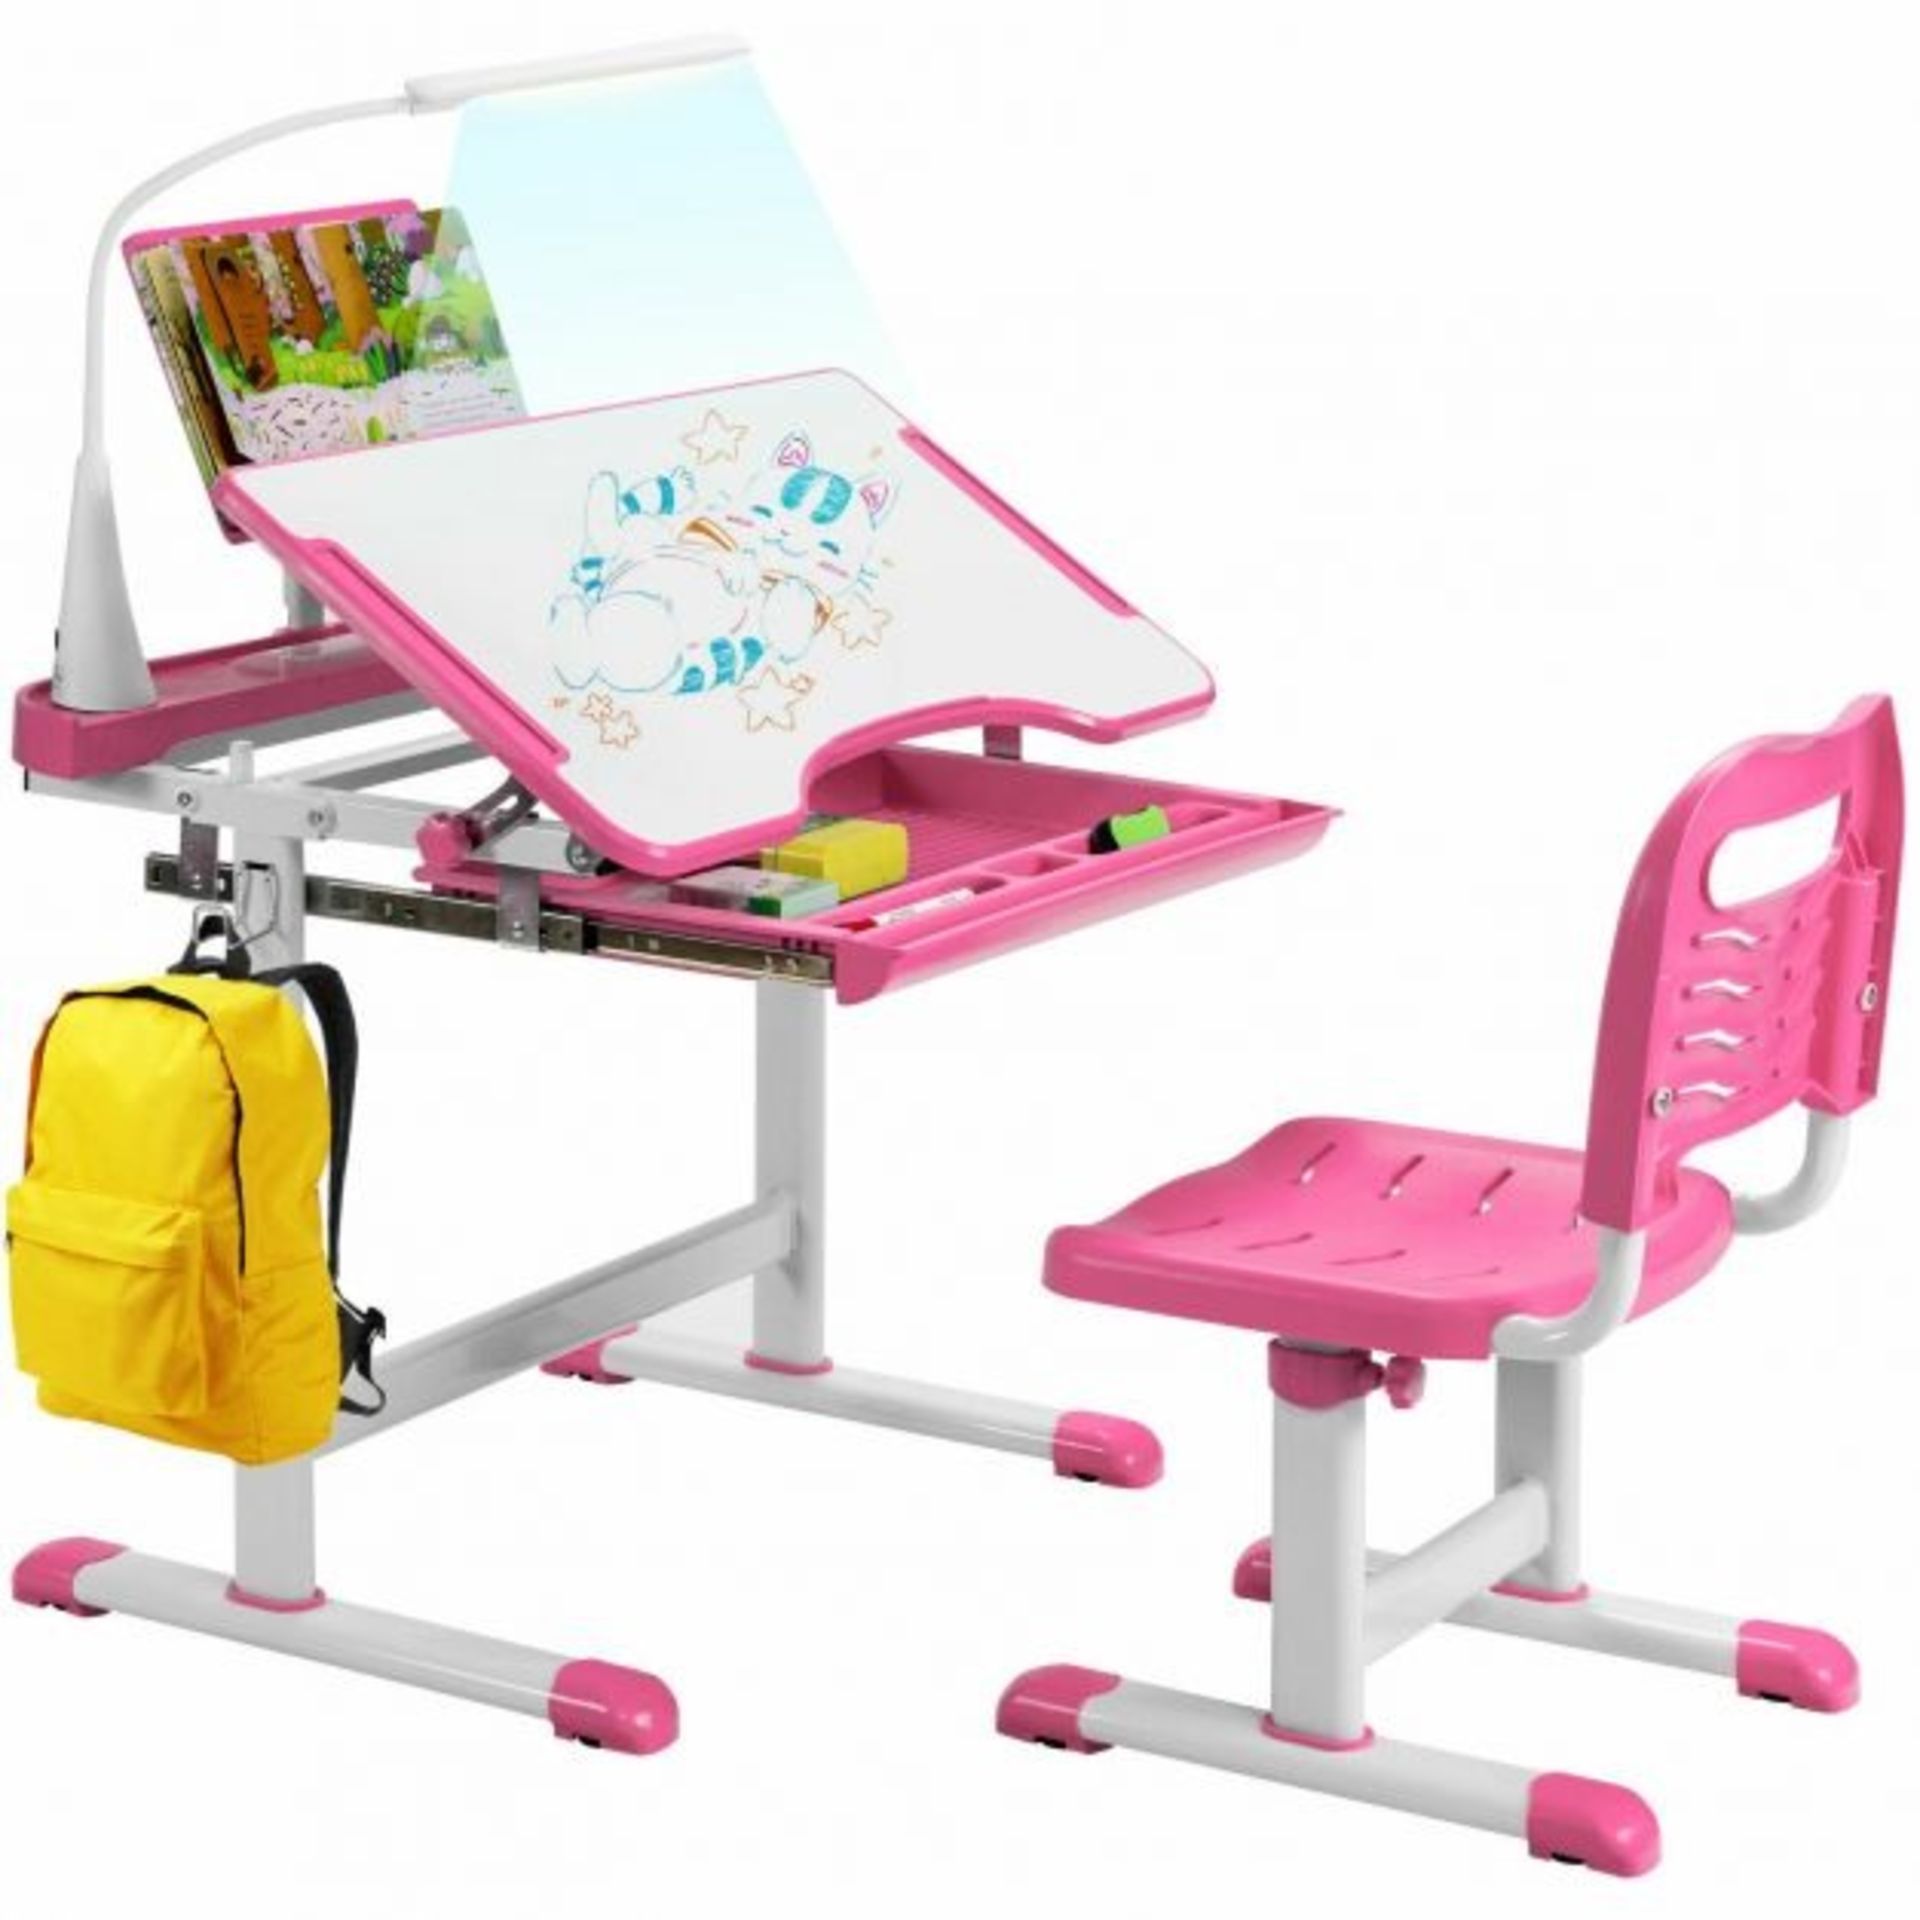 Height Adjustable Kid's Tilted Desk Set with Lamp & Drawer - ER54